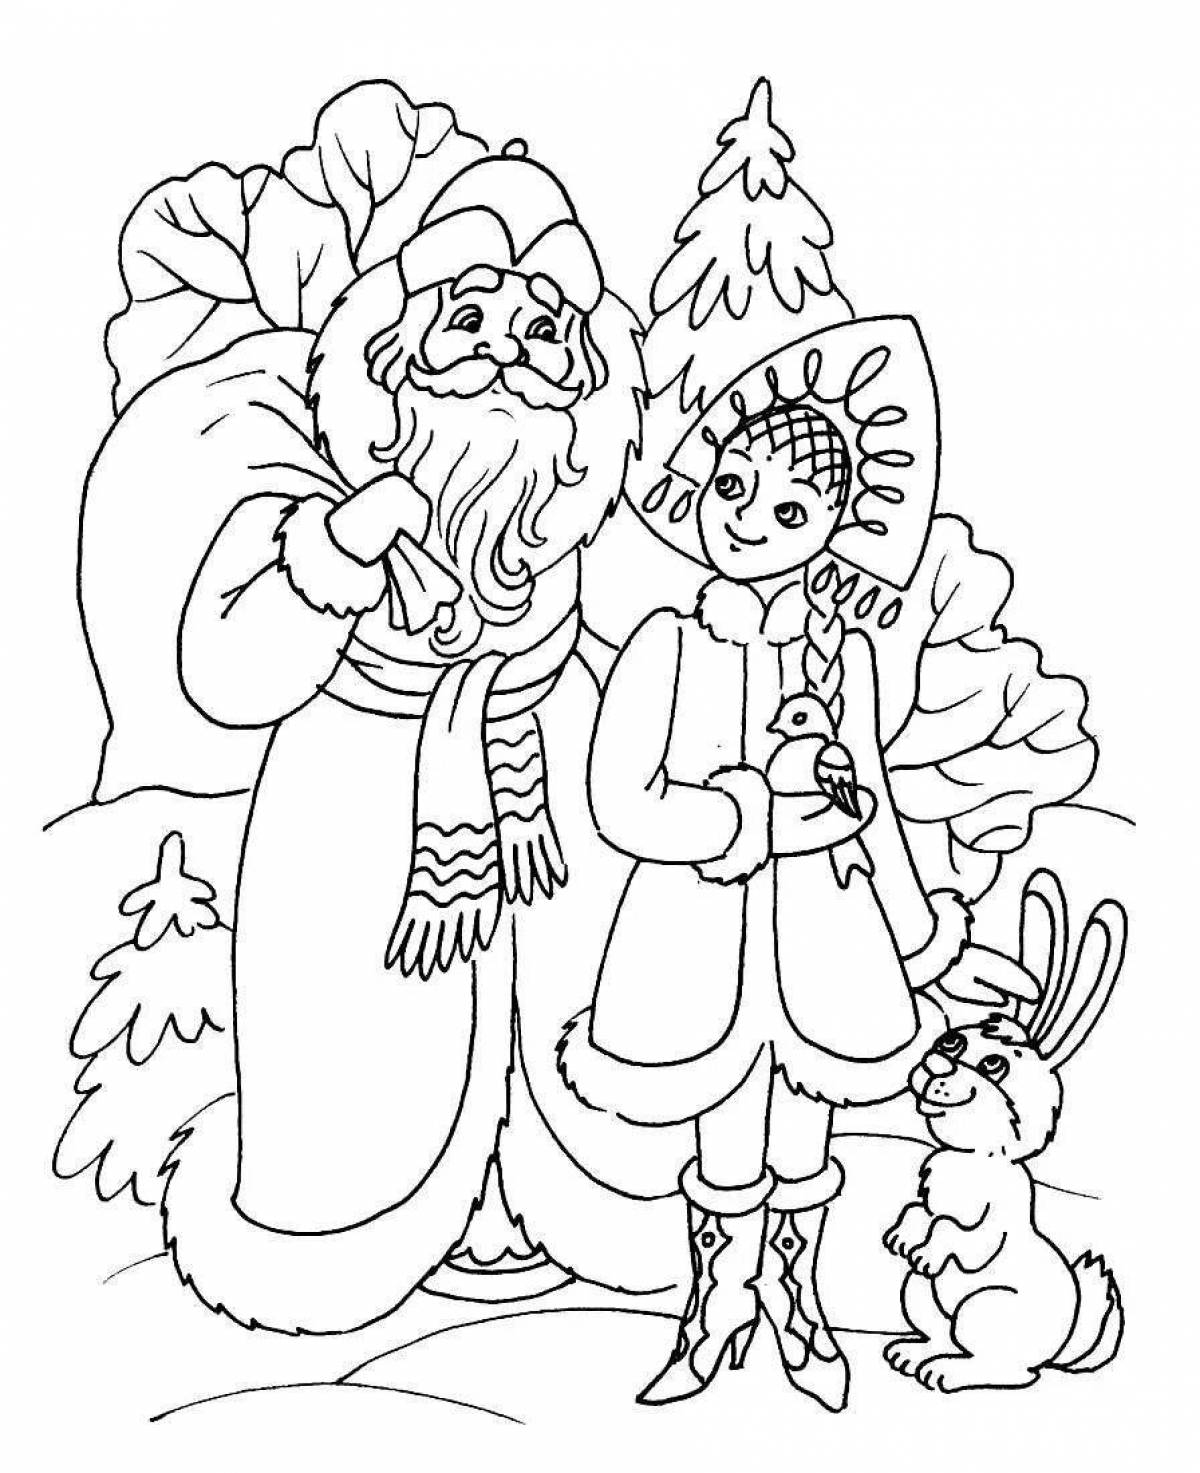 Coloring page dazzling santa